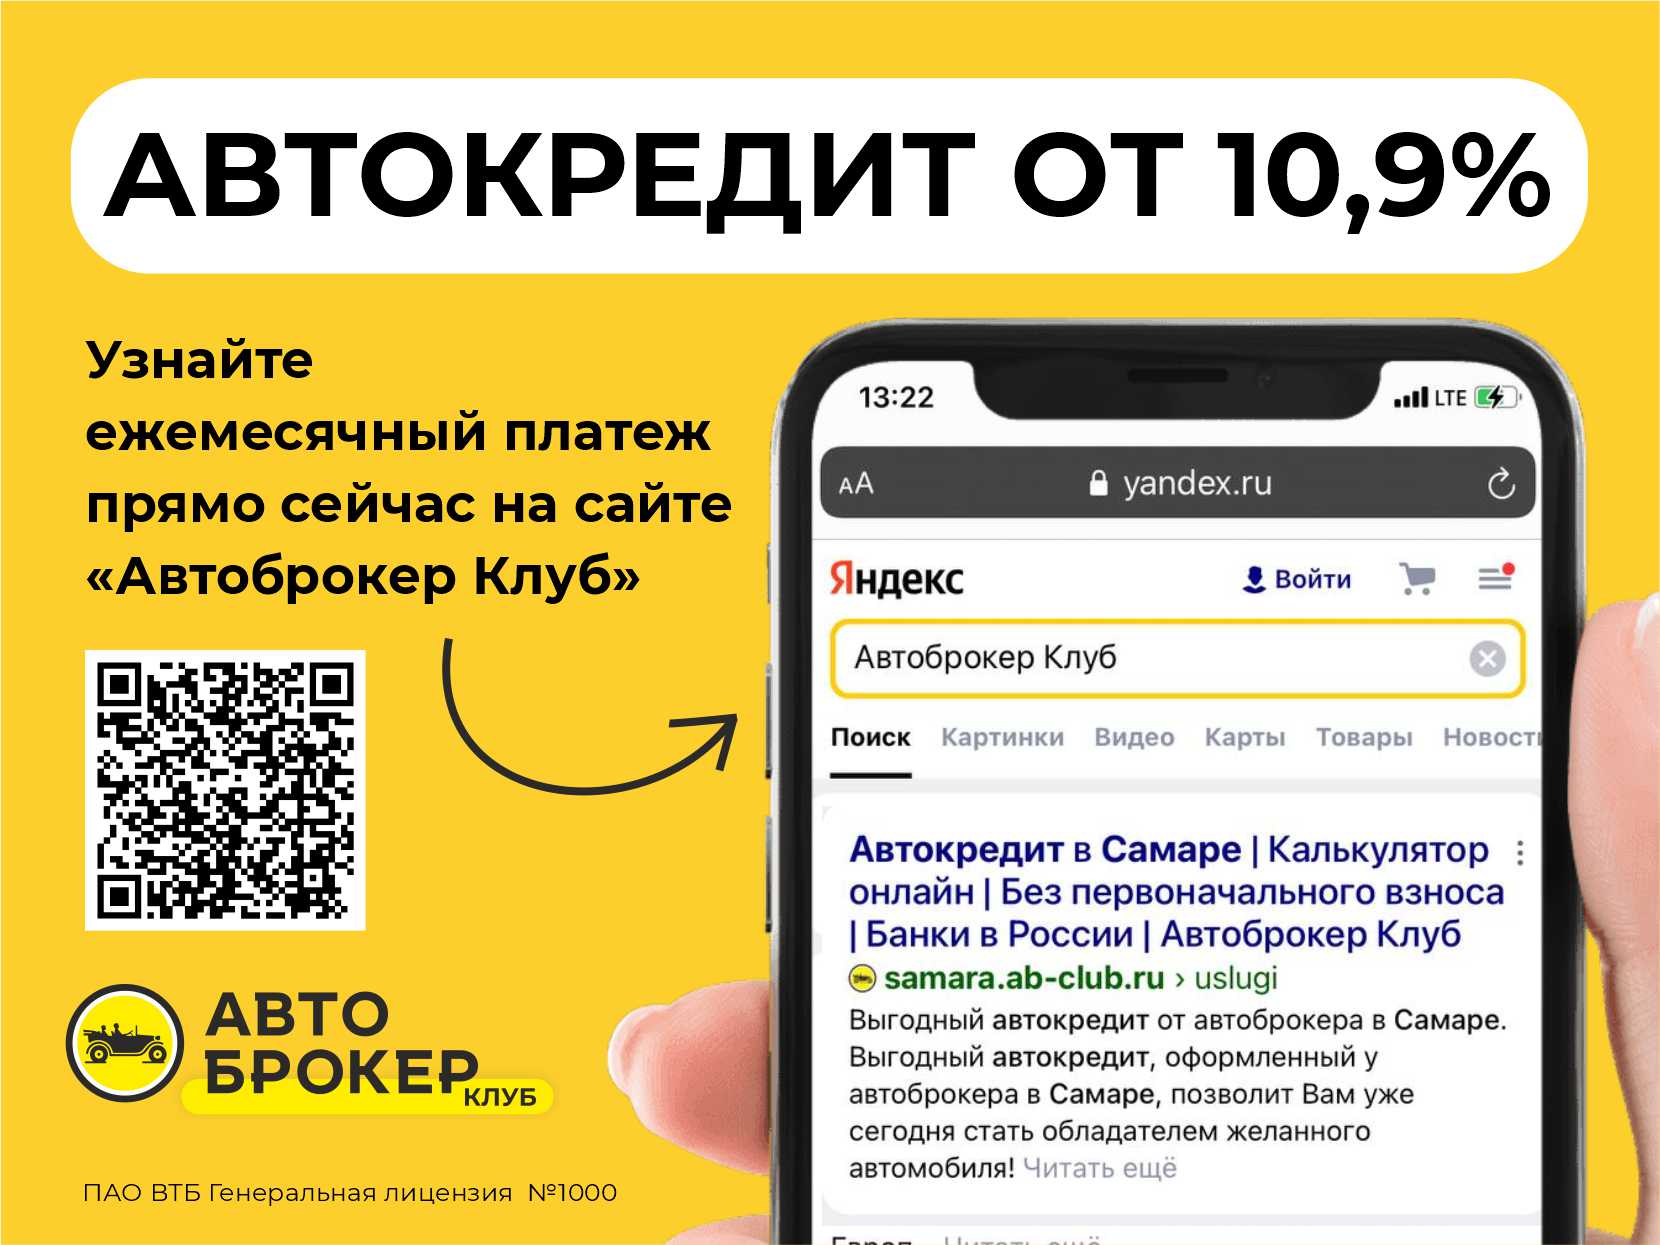 Купить б/у Kia Optima, 2019 год, 188 л.с. в Севастополе